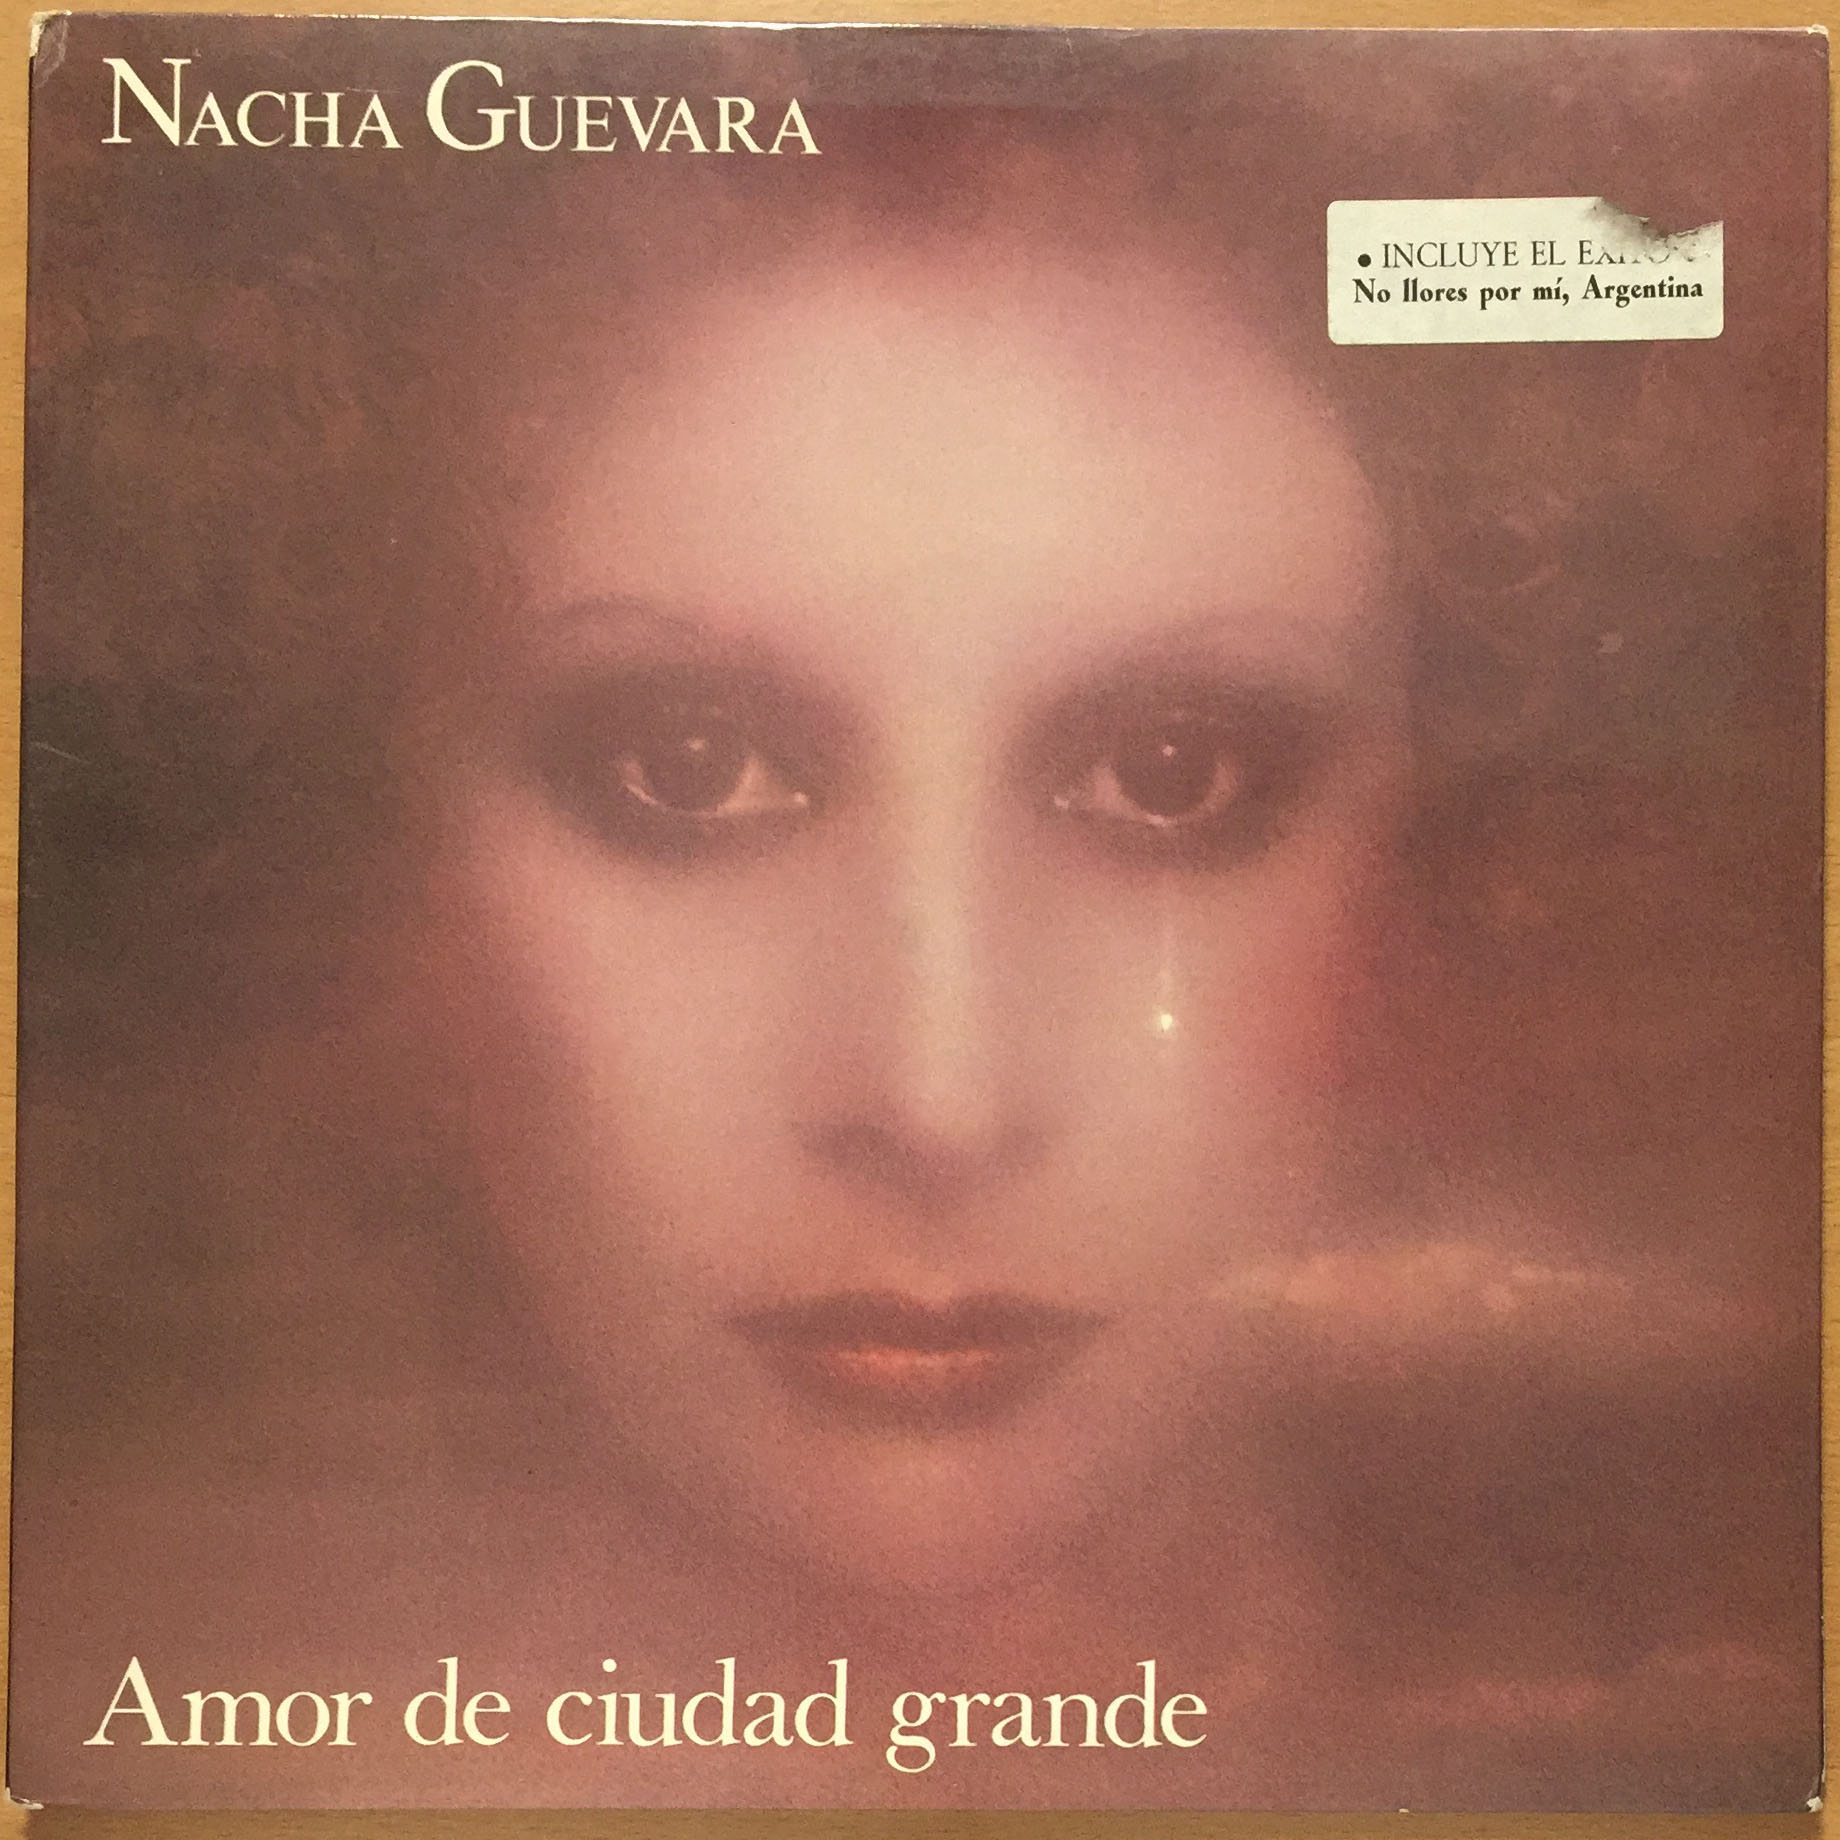 Nacha Guevara-Amor de ciudad grande. 1977 Hispavox